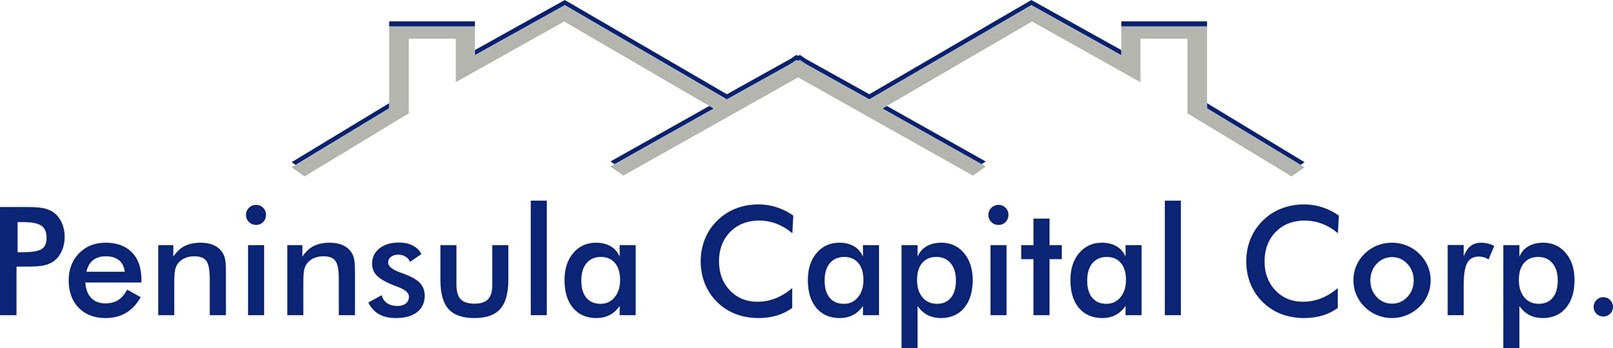 Peninsula Capital Corp. Logo.jpg